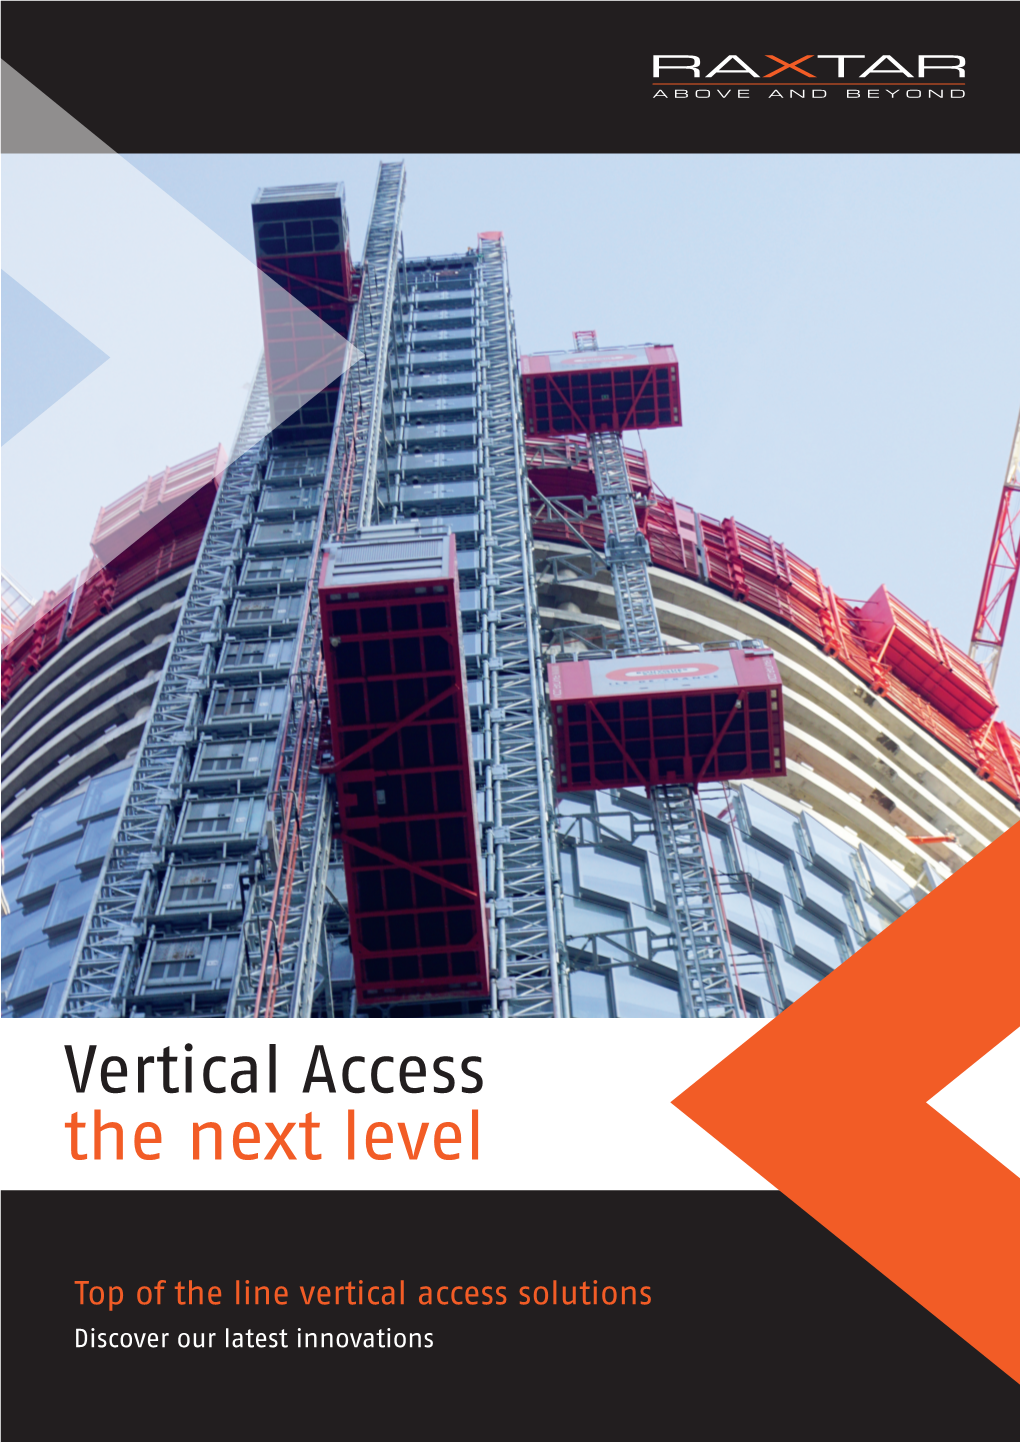 RAXTAR Vertical Access Next Level